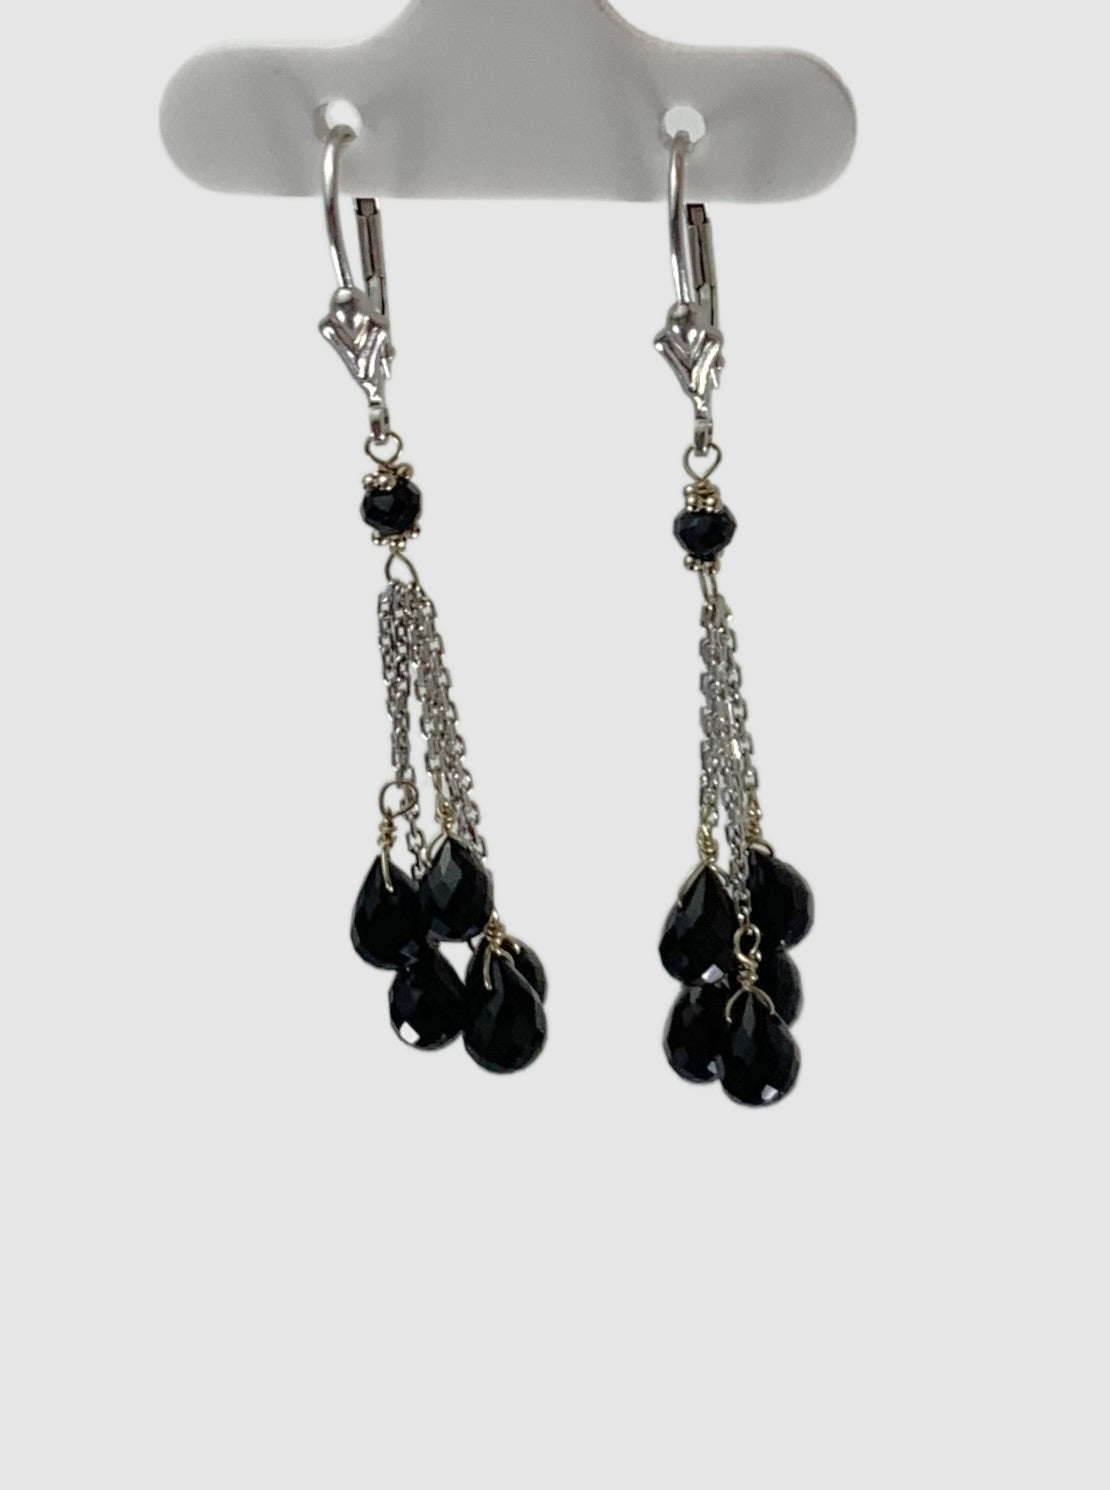 Onyx 5 Stone Tassel Earrings in 14KW - EAR-028-5DTSGM14W-OX